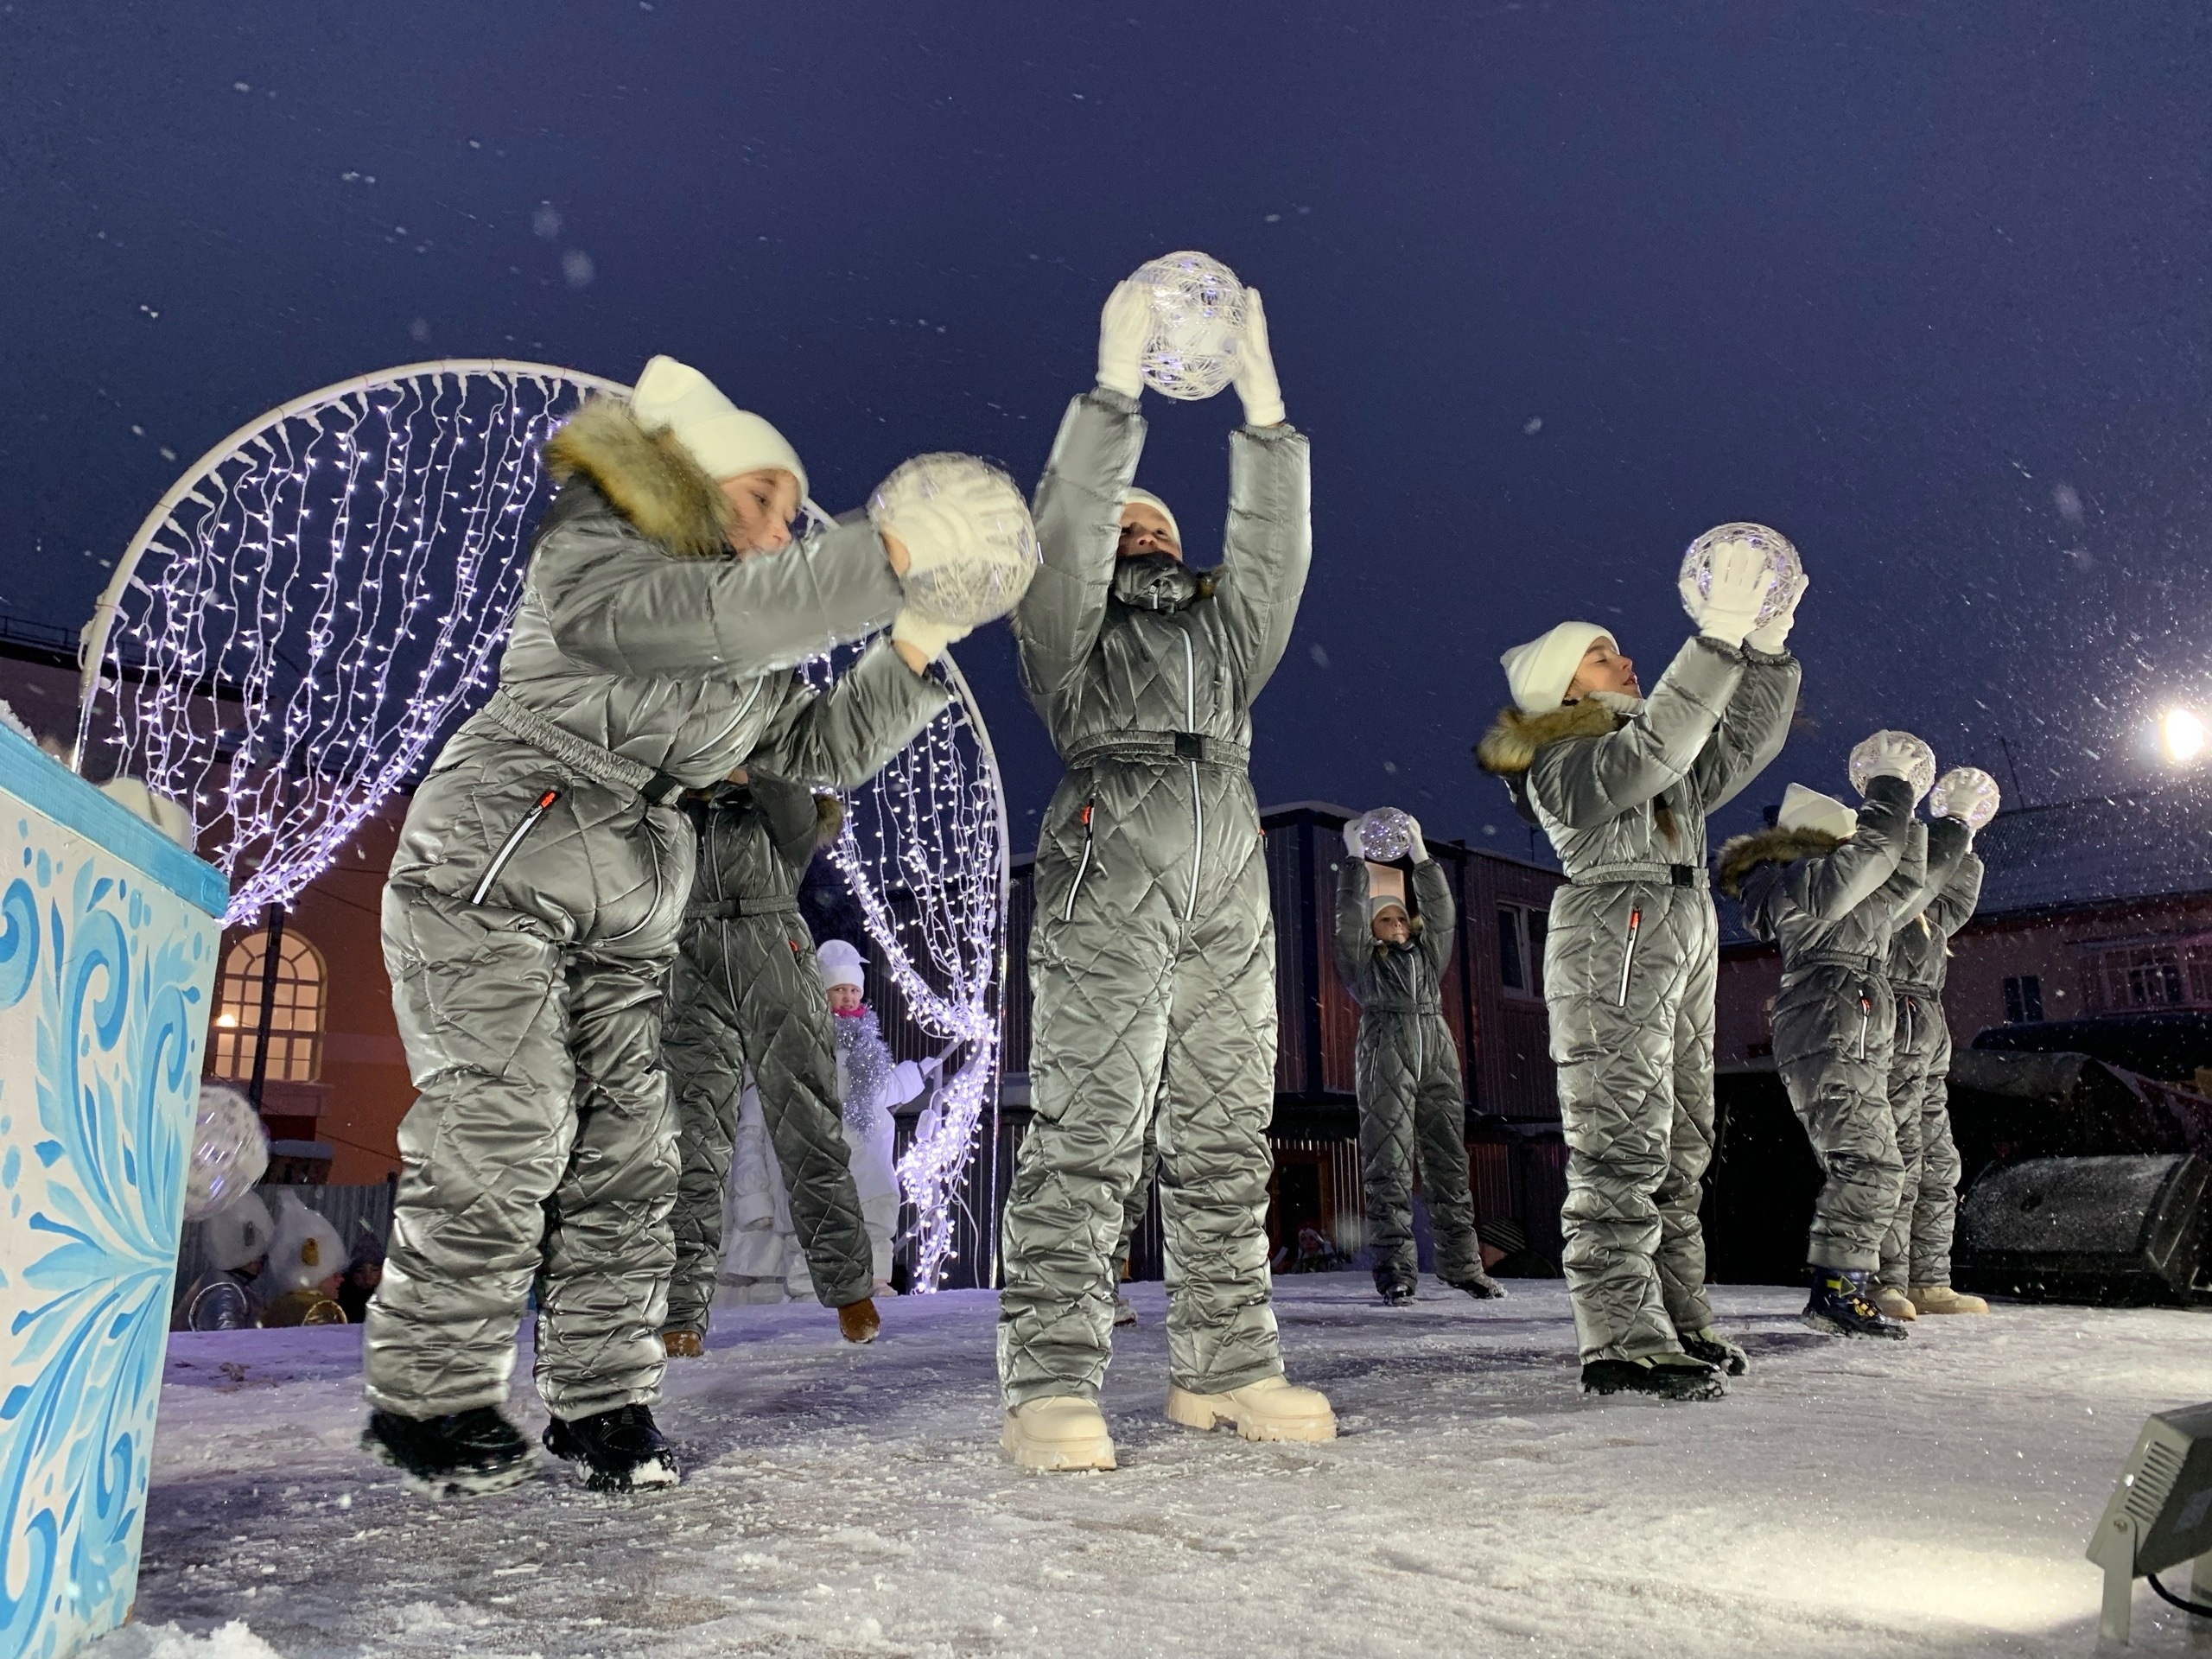 Сегодня зажглись новогодние огни на главной ёлке Новодвинска! Состоялся традиционный праздник городской ёлки «Главная тайна Деда Мороза»!